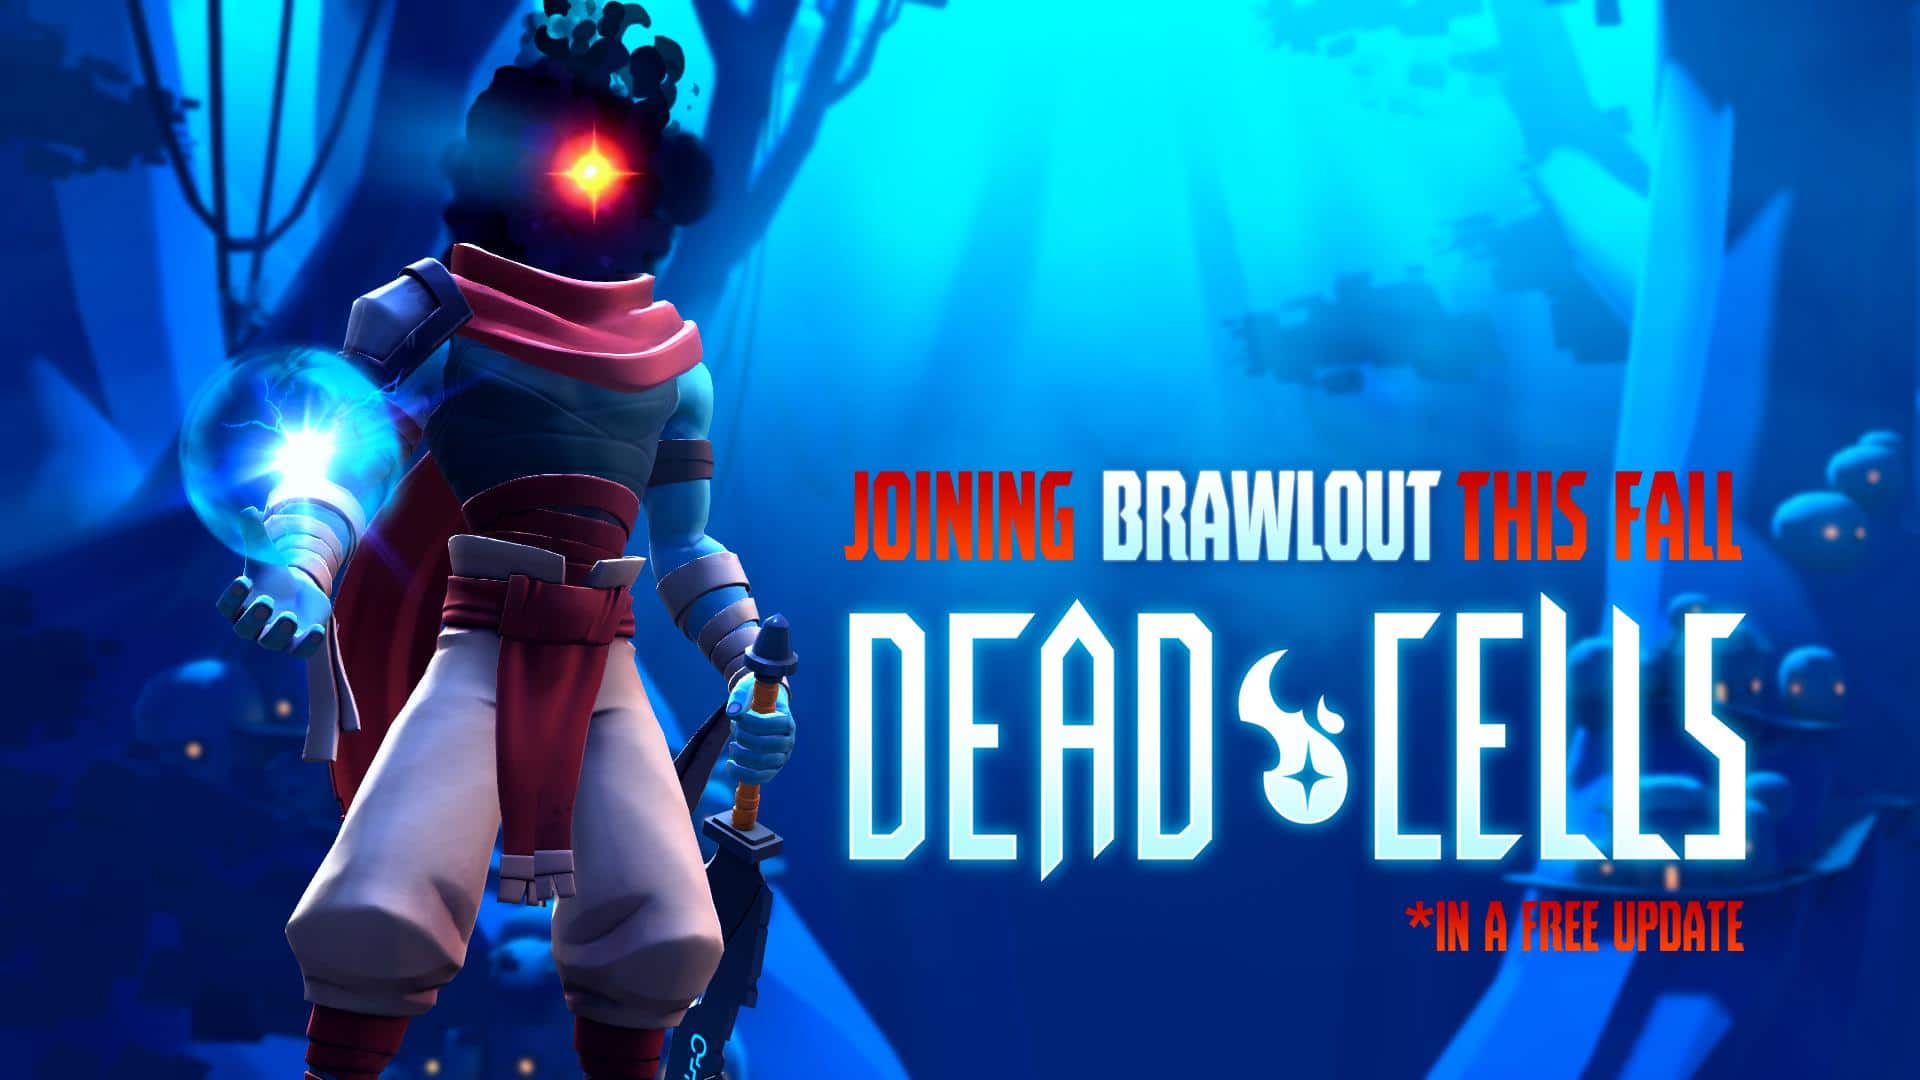 Brawlout se actualiza a la versión 2.0 el 21 de marzo añadiendo a Beheaded de Dead Cells